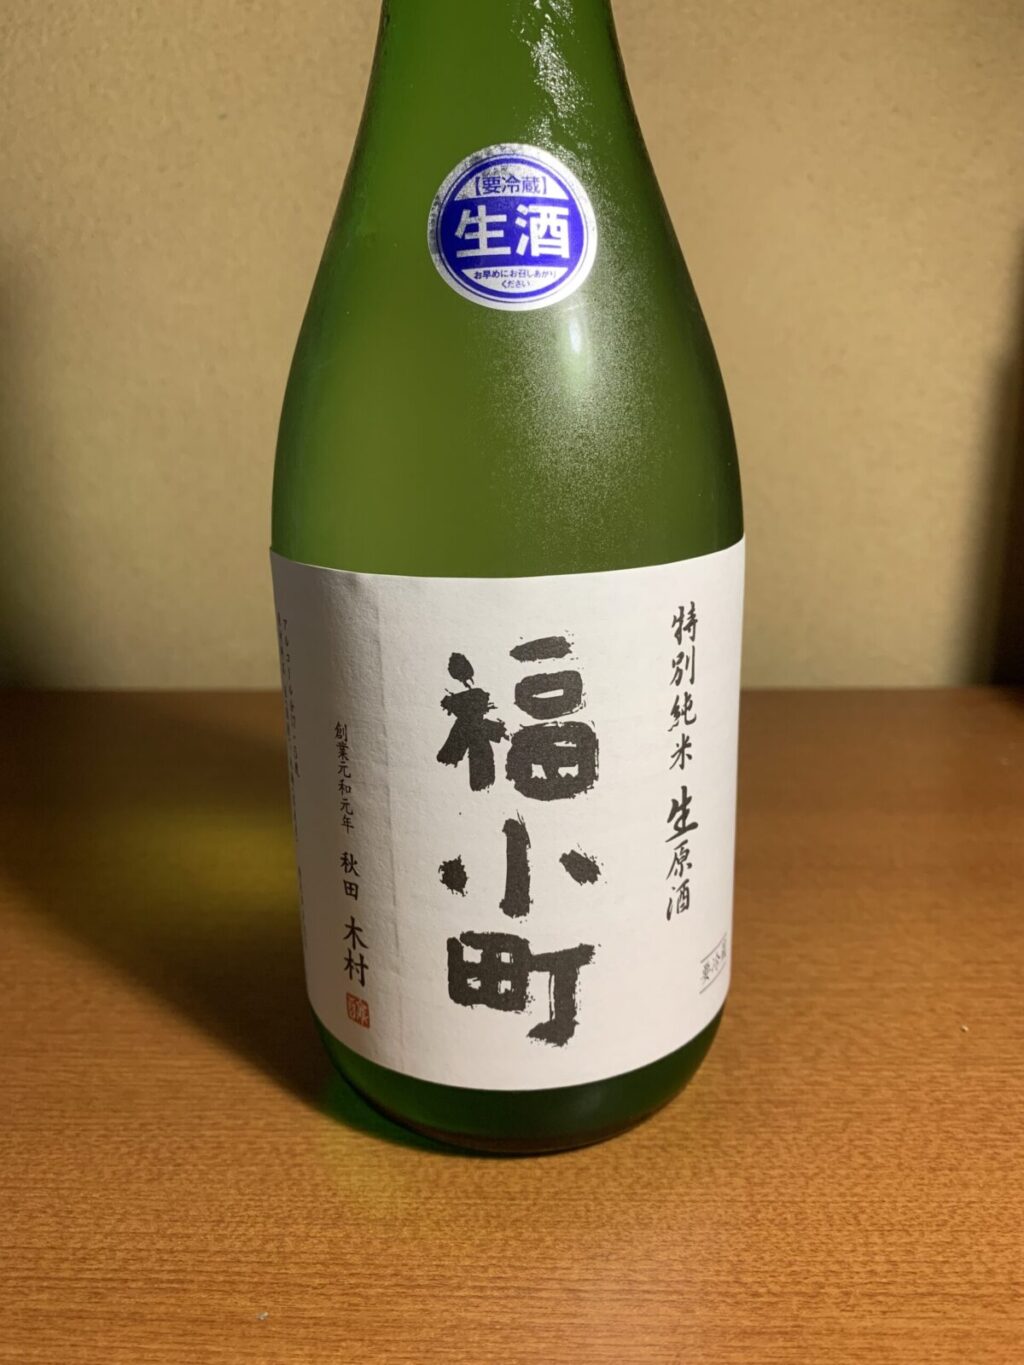 秋田の日本酒『福小町号外編』は華やかな香りと酸味のバランスが絶妙